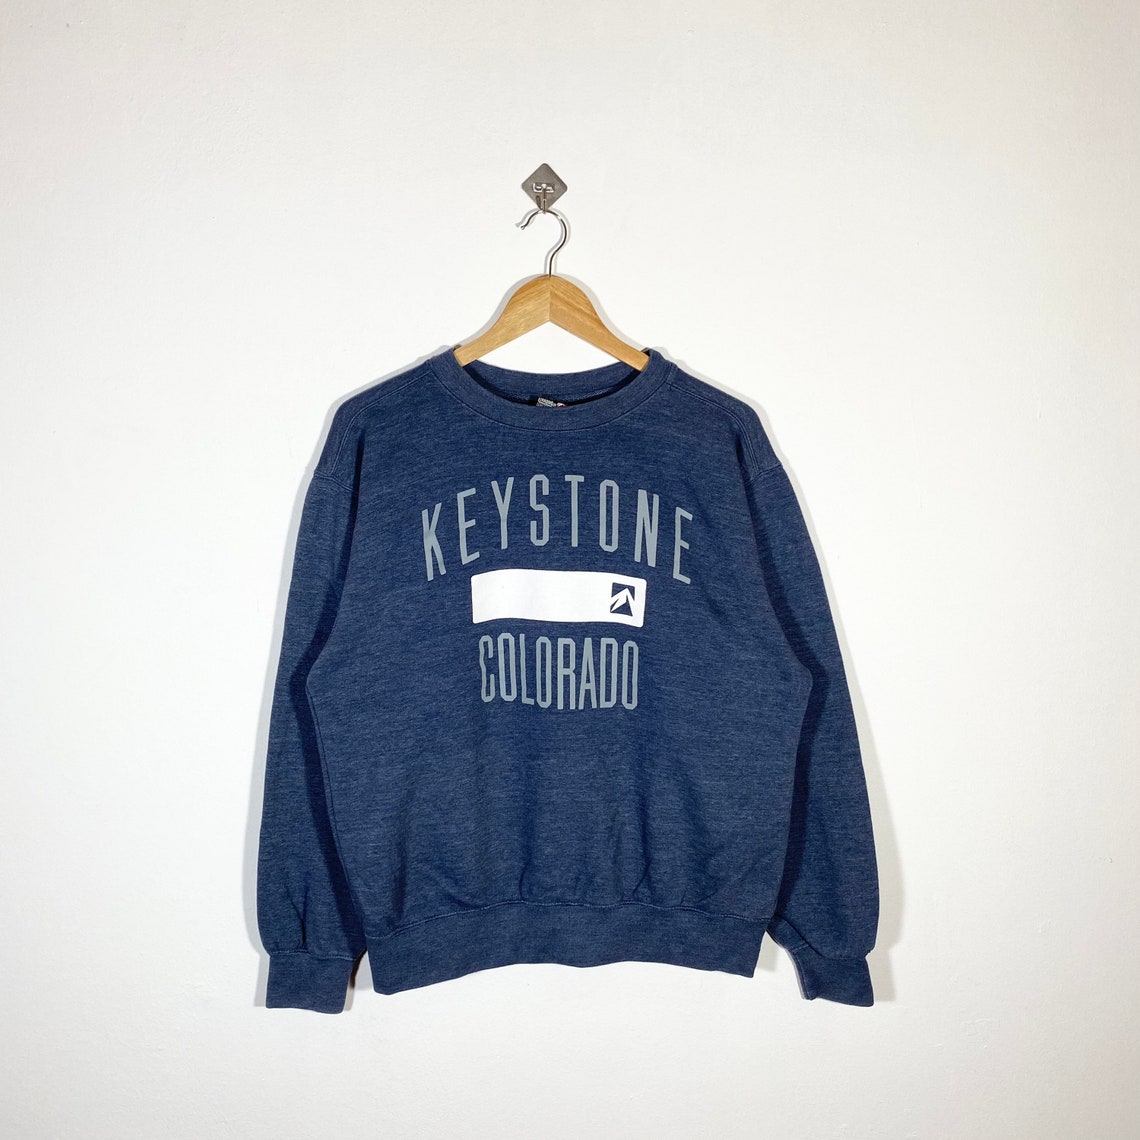 Keystone Colorado Sweatshirt / Keystone Crewneck / Keystone | Etsy